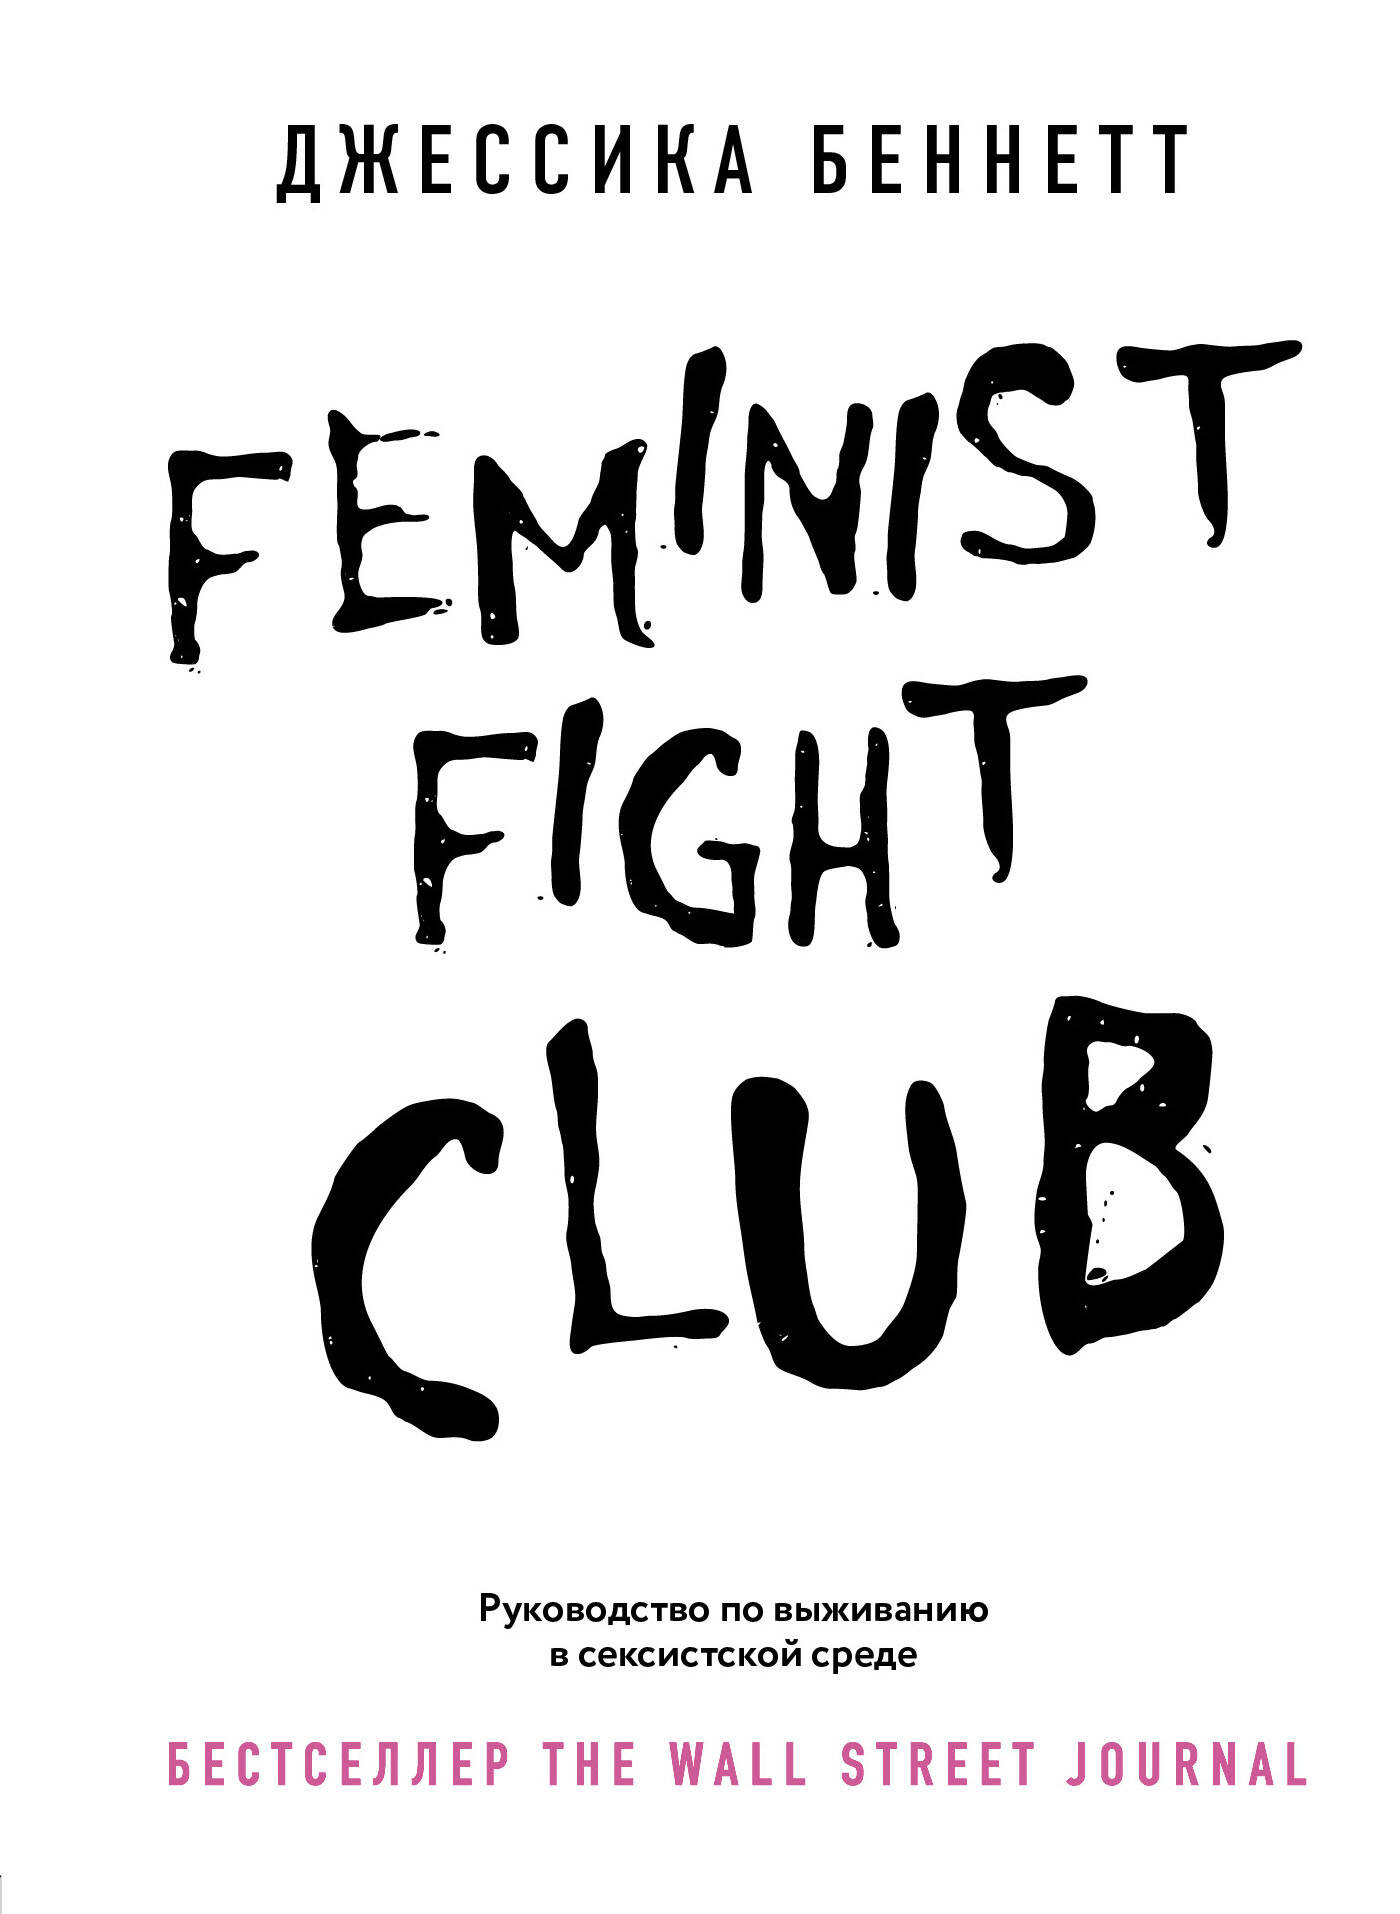 бэкман бим атилов аман бойцовский клуб боевой фитнес для женщин Беннетт Дон Feminist fight club. Руководство по выживанию в сексистской среде